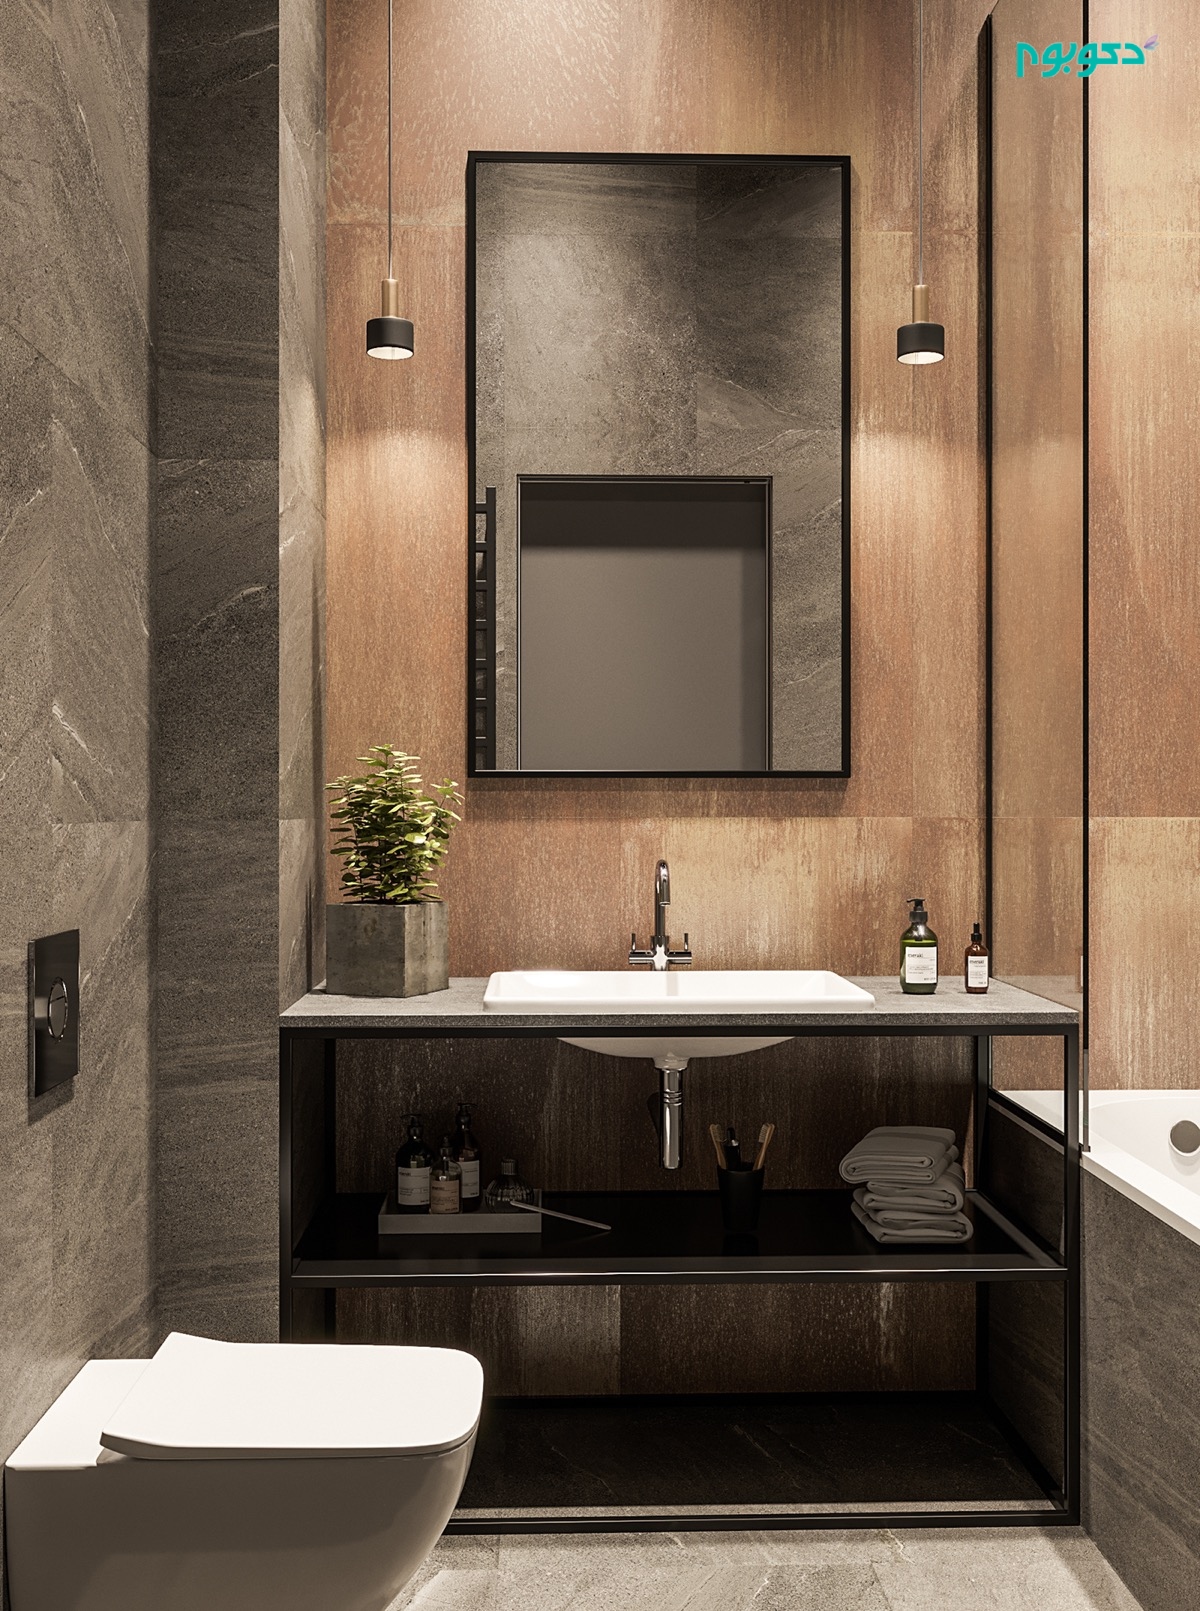 wood-panel-bathroom-interior.jpg